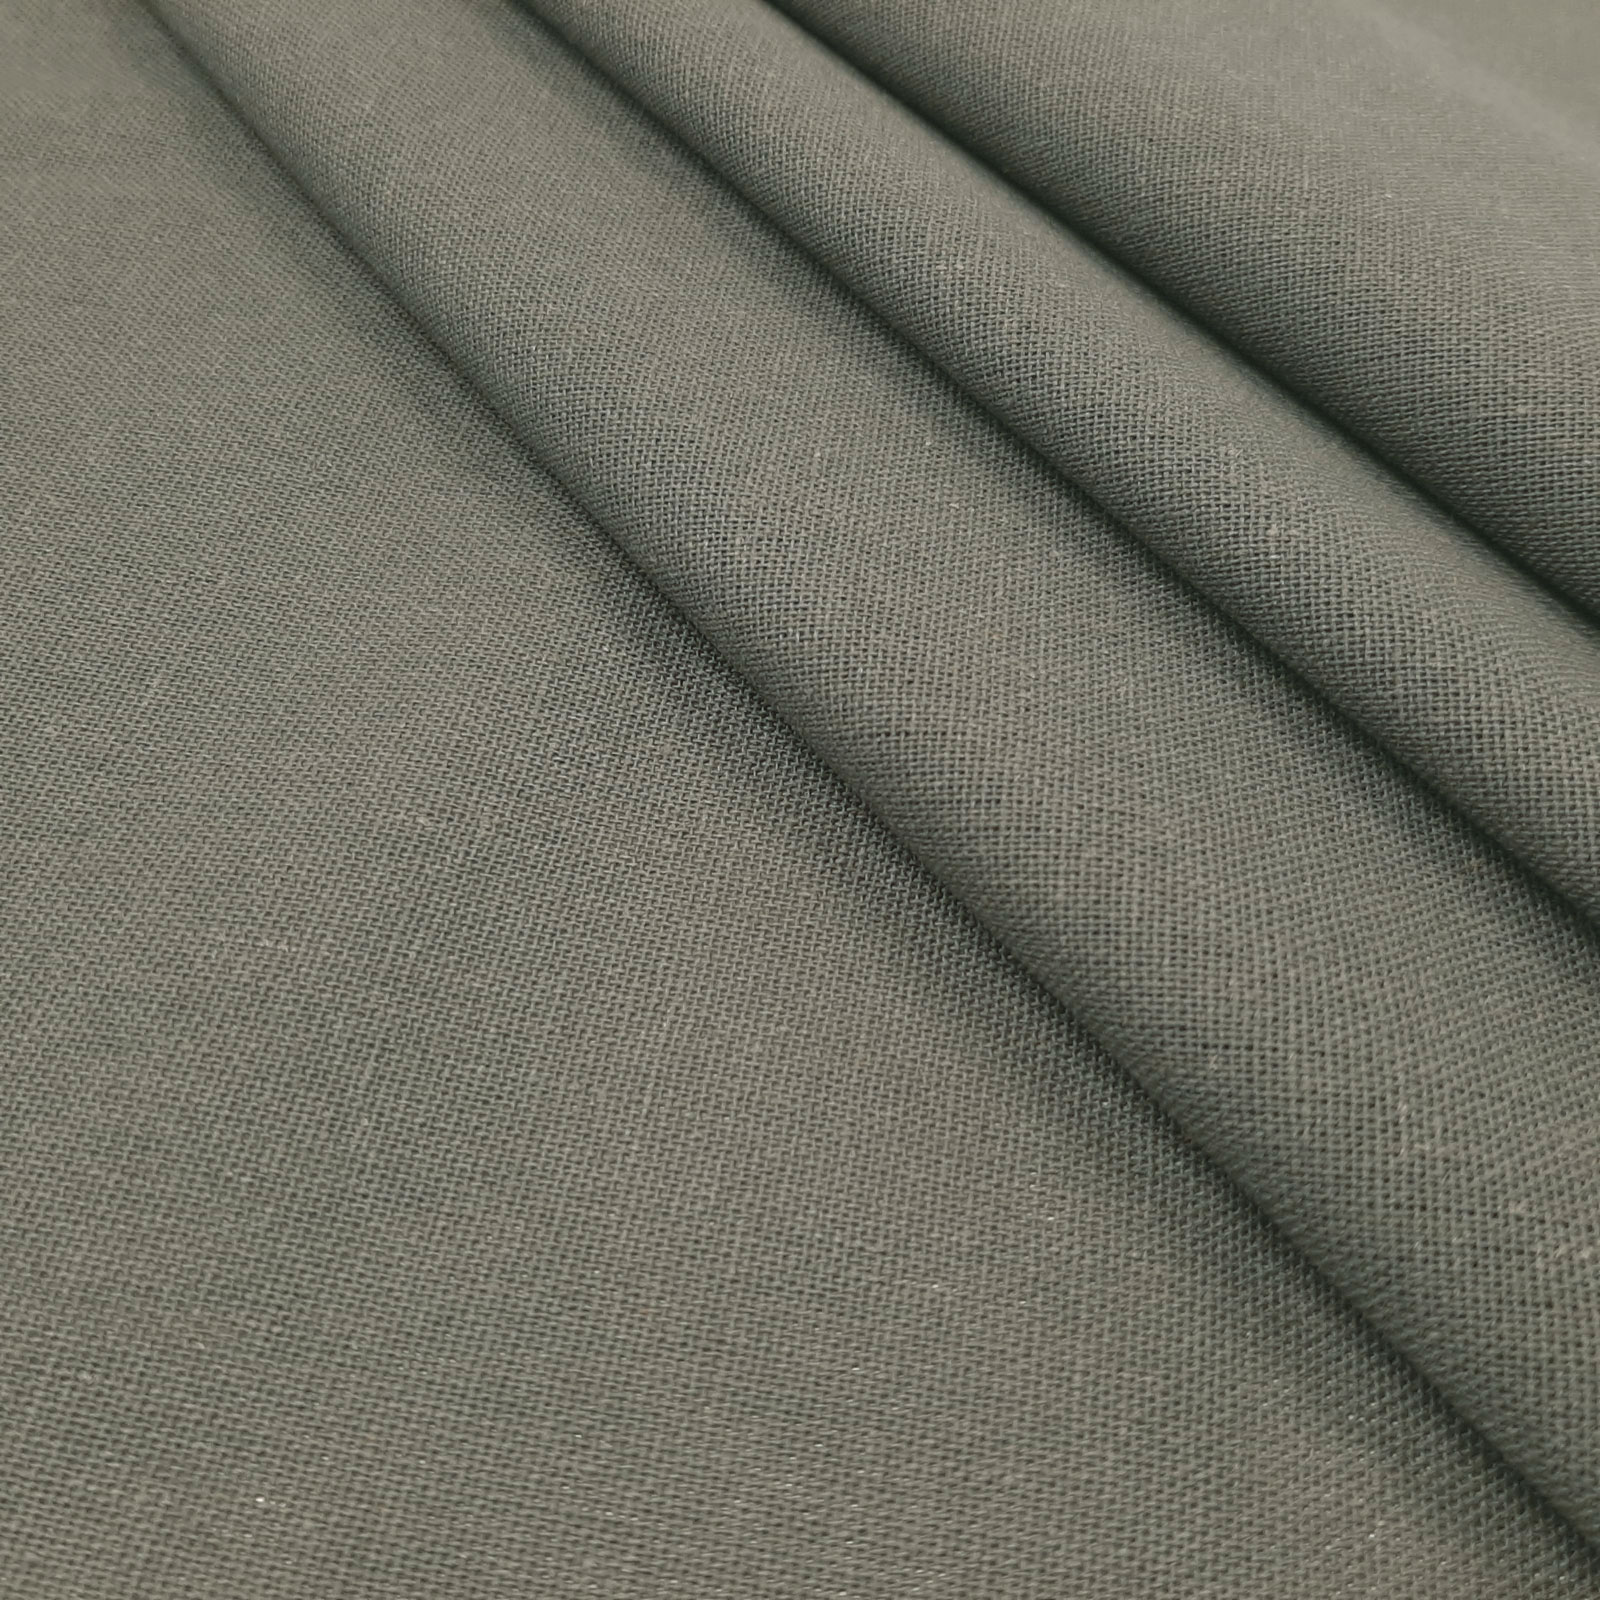 Bella - tela de algodón de lino natural - Gris Oscuro